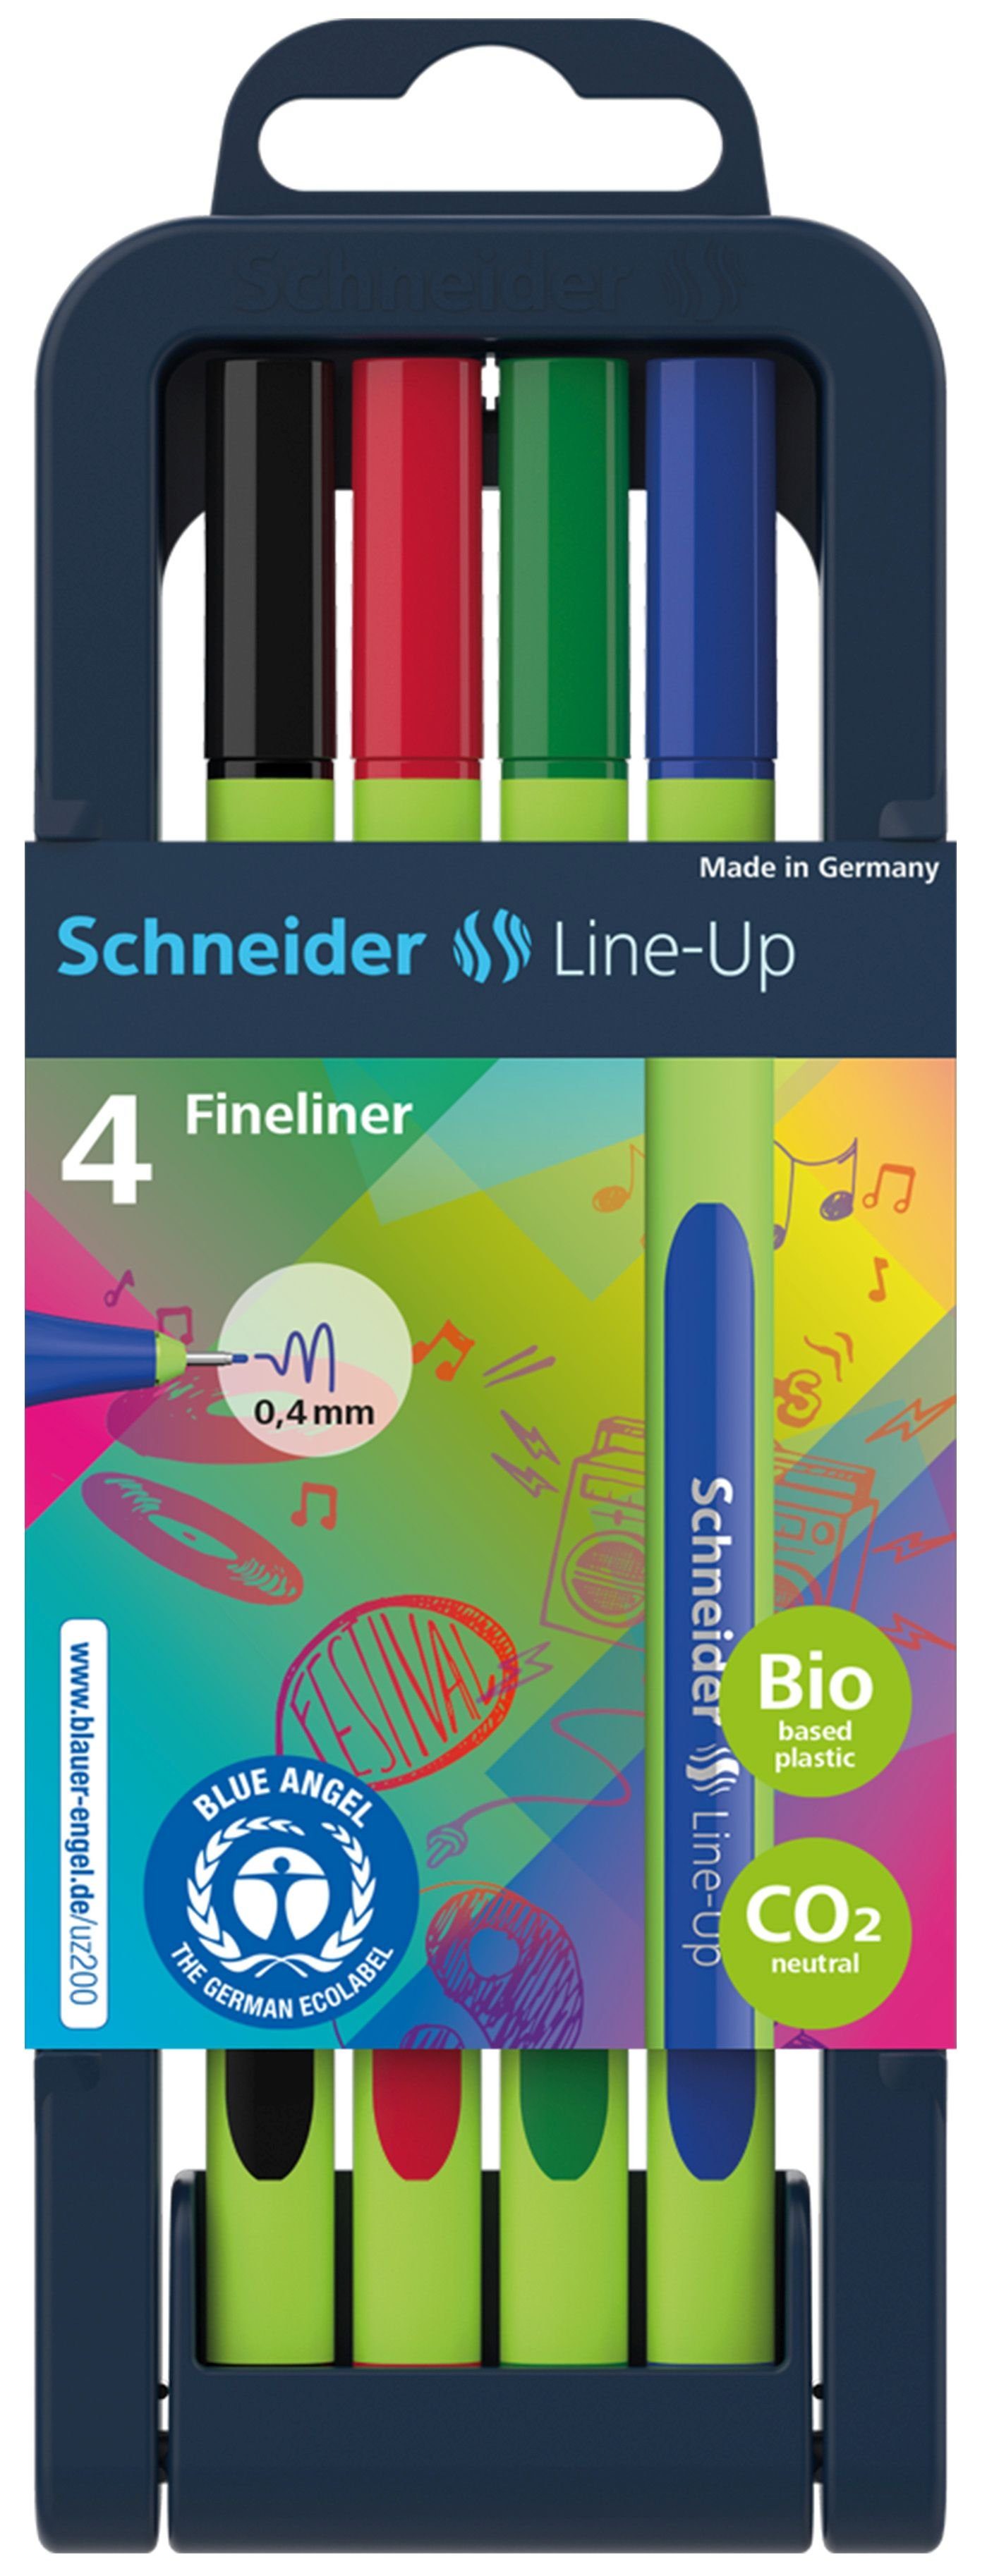 SCHNEIDER Fineliner 4 Schneider Line-Up Fineliner farbsortiert 0,4 mm